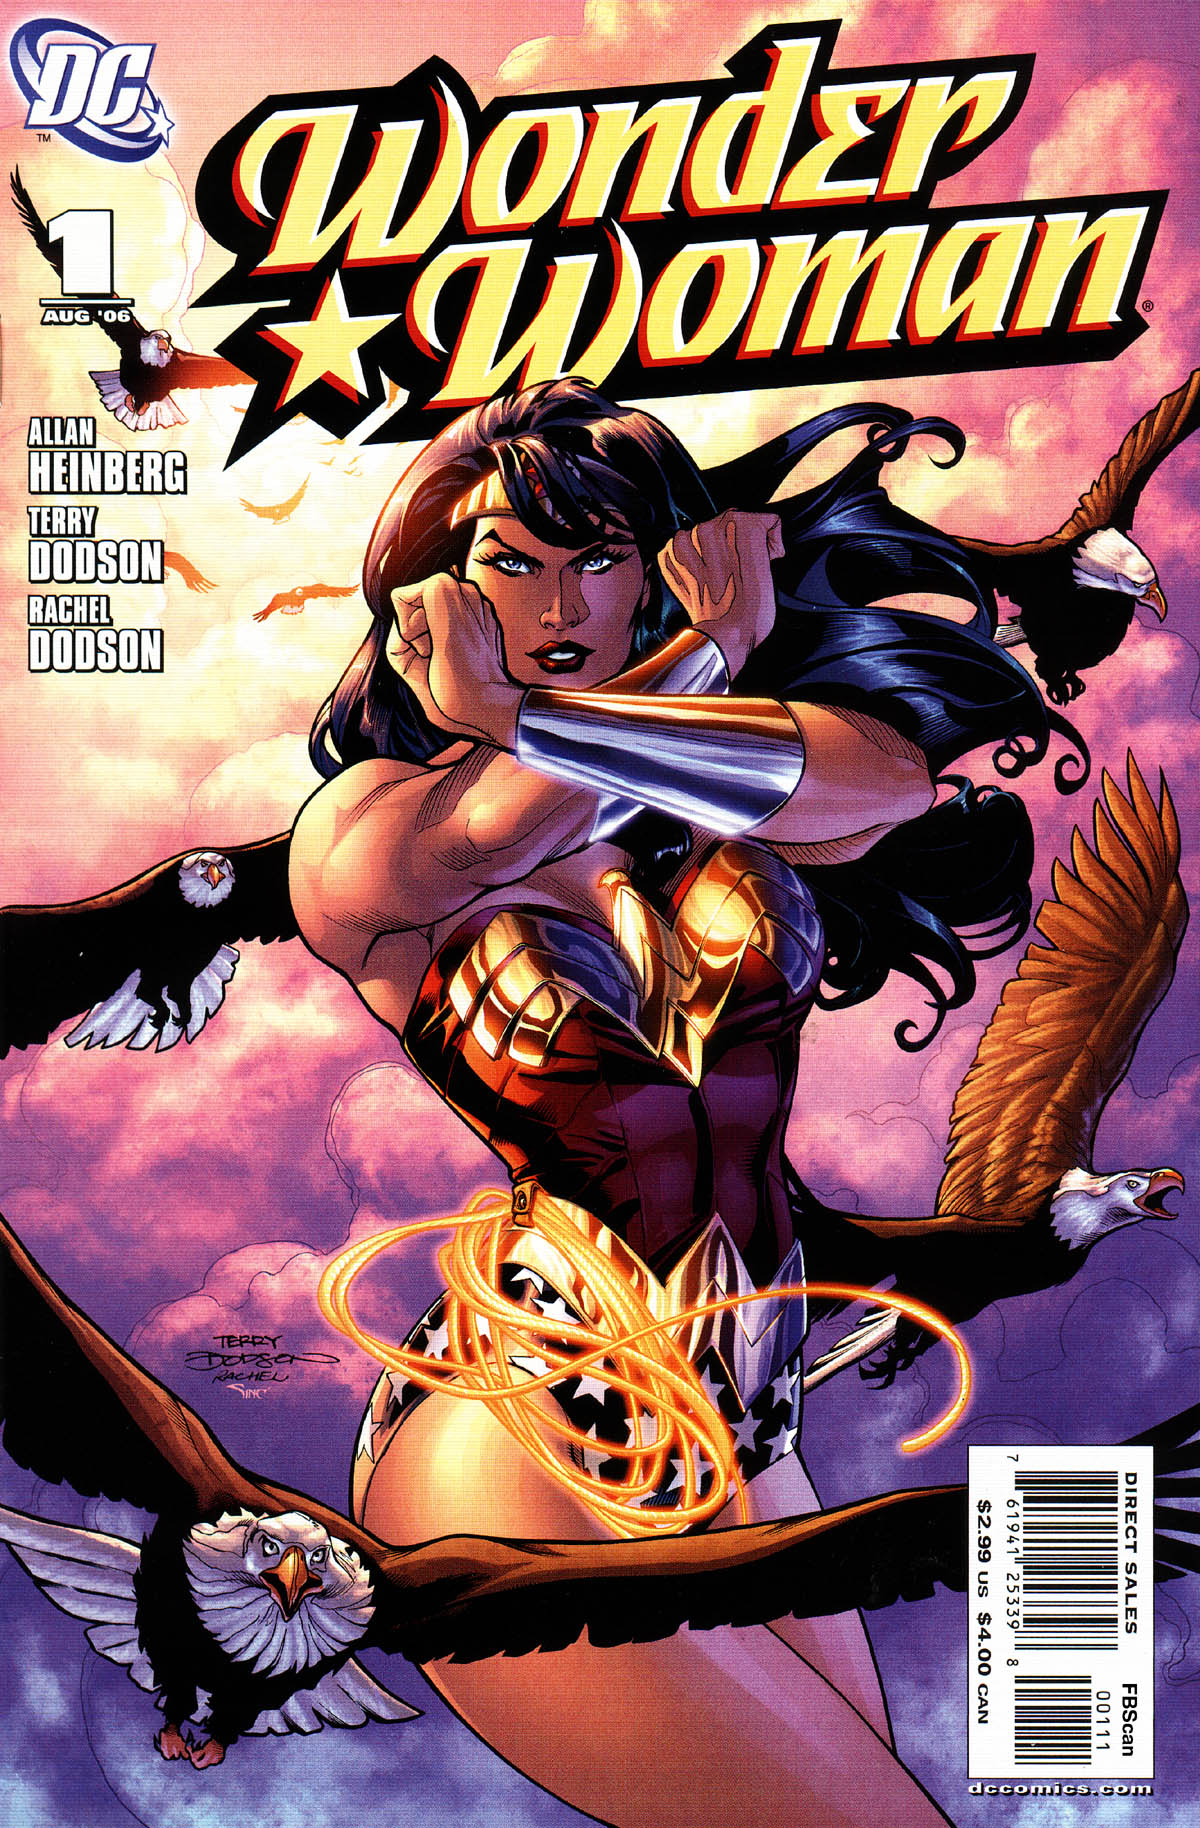 Wonder Woman (2006-) #3